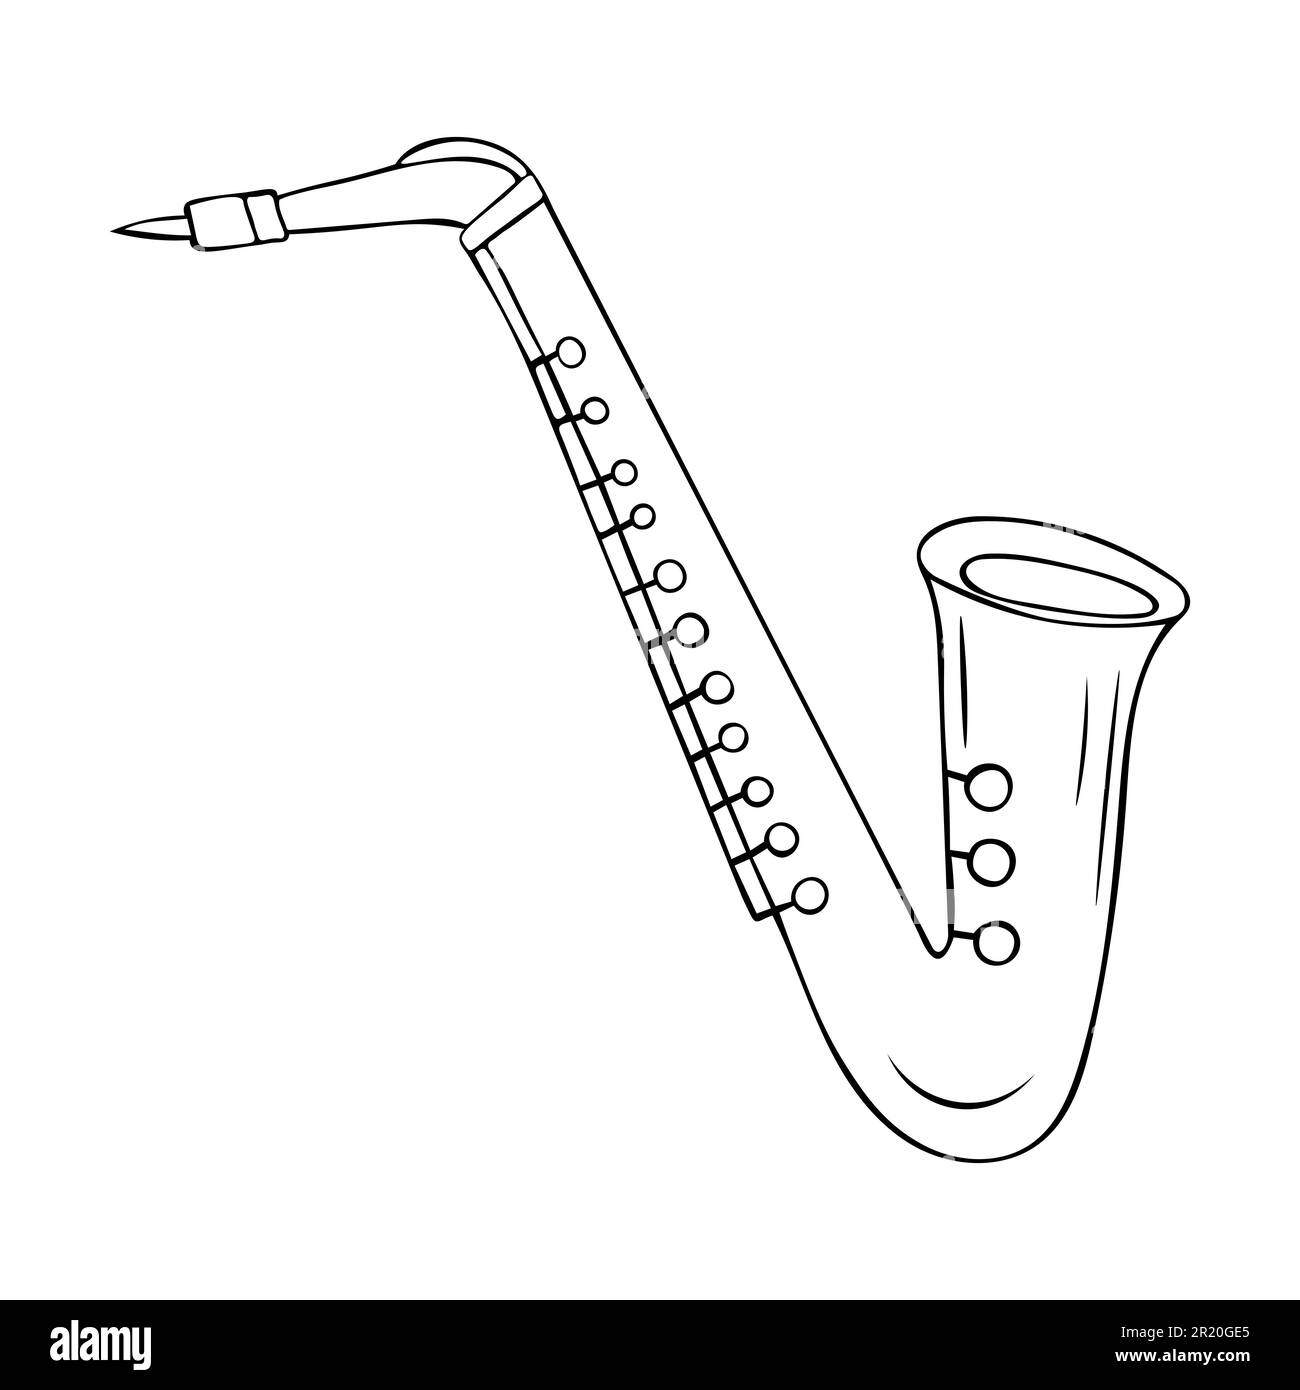 Le saxophone un instrument de musique. Illustration vectorielle de couleur  dessinée à la main isolée sur un fond blanc Image Vectorielle Stock - Alamy